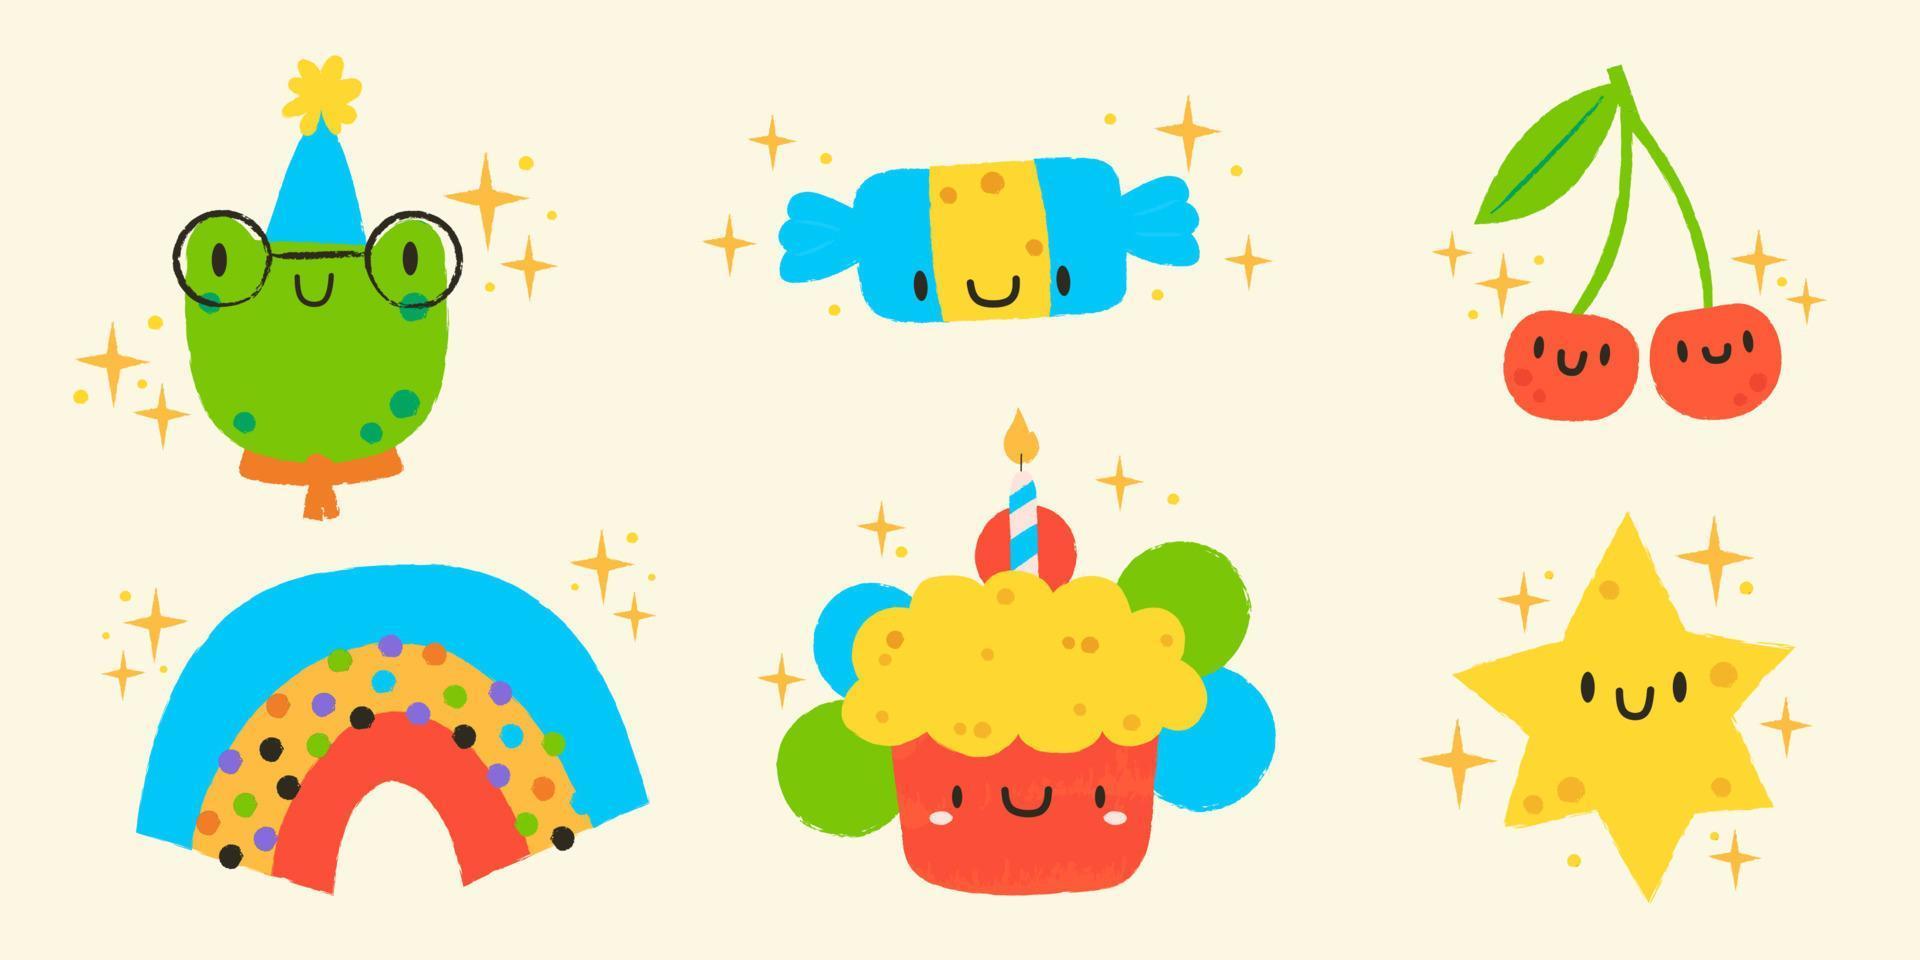 conjunto de 6 6 ilustraciones en kawaii estilo. linda rana, dulce, cerezas, arcoíris, pastel y estrella.mano dibujado cumpleaños etiquetas conjunto vector ilustración diseño.feliz cumpleaños saludo tarjeta para niños